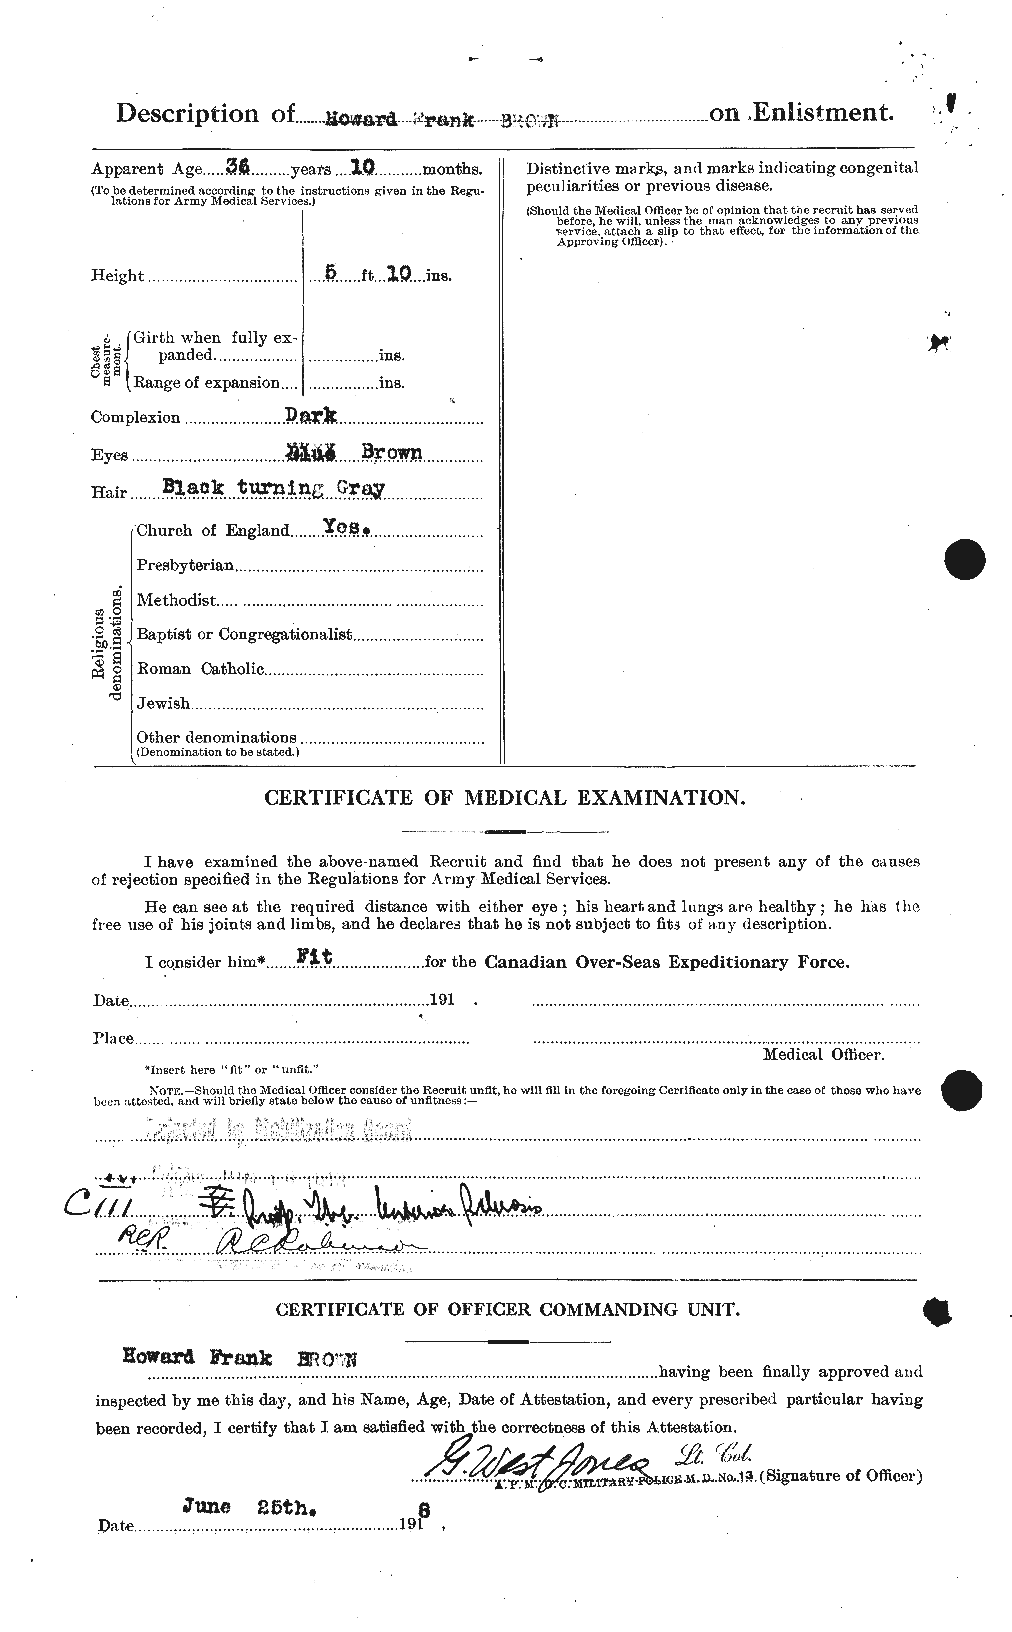 Dossiers du Personnel de la Première Guerre mondiale - CEC 265618b